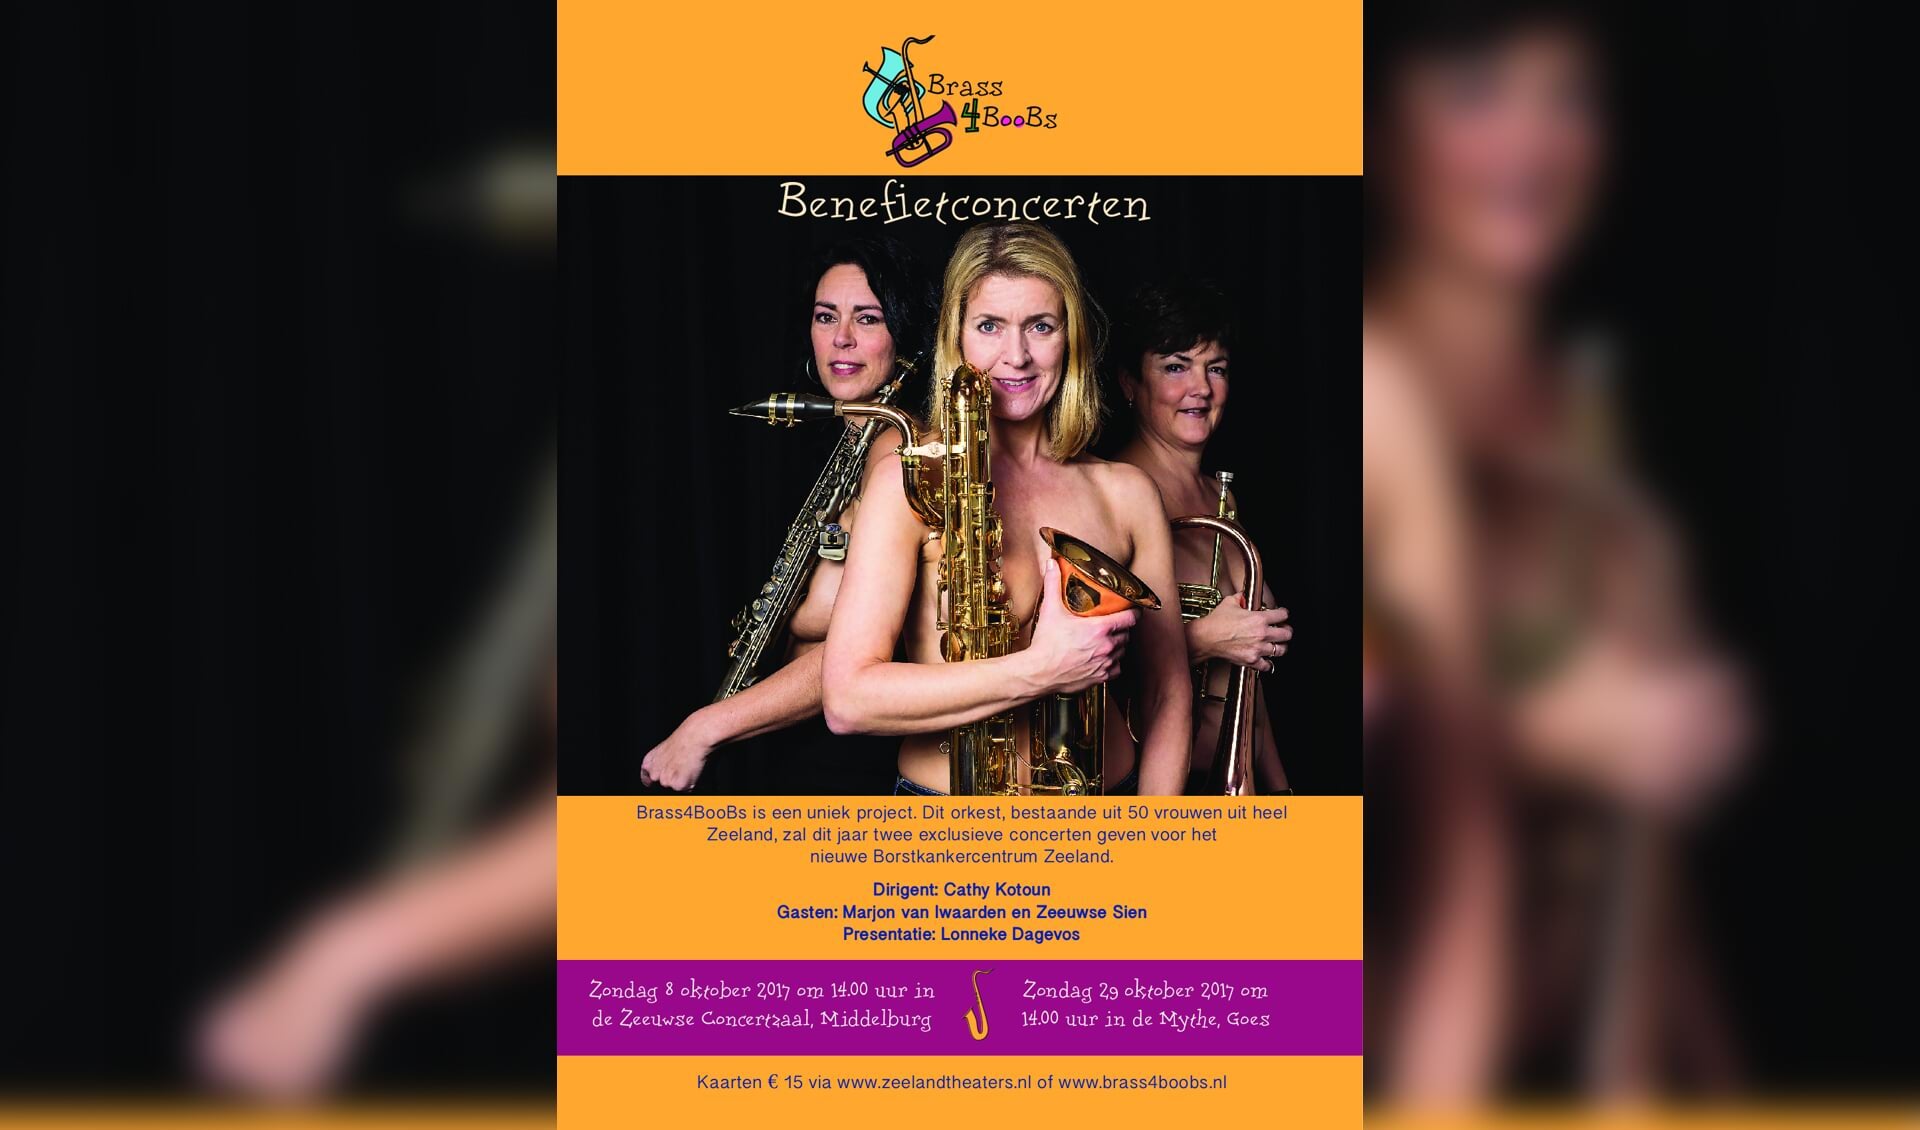 Brass4BooBs is een fanfareorkest dat bestaat uit z'n 50 vrouwen uit heel Zeeland.